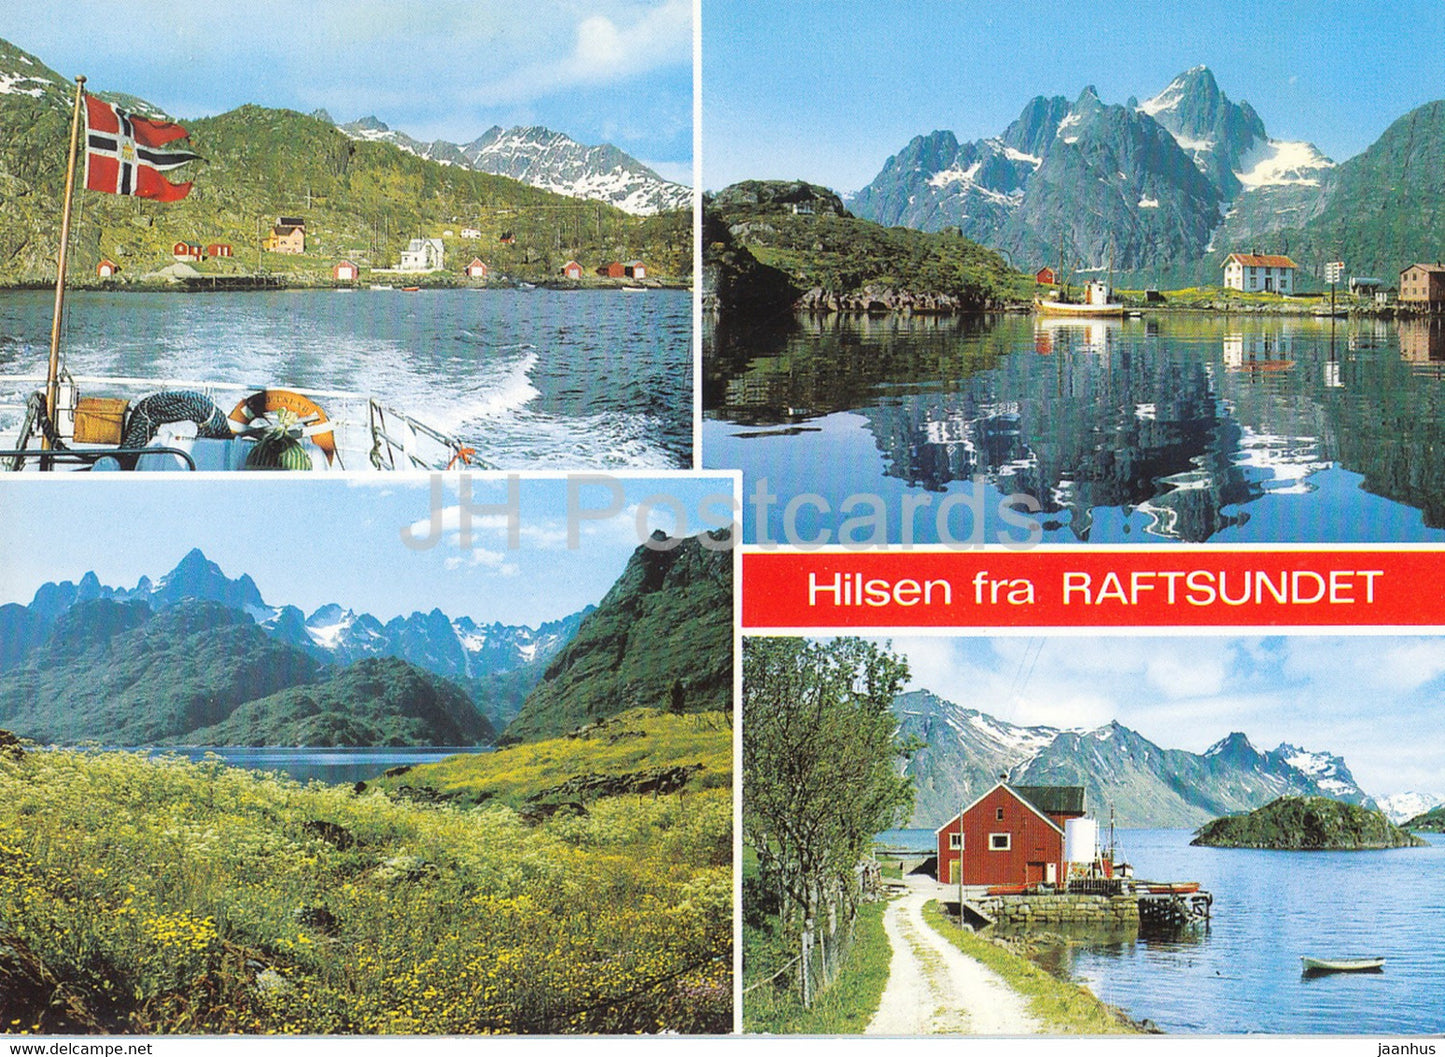 Hilsen fra Raftsundet - Norway - unused - JH Postcards